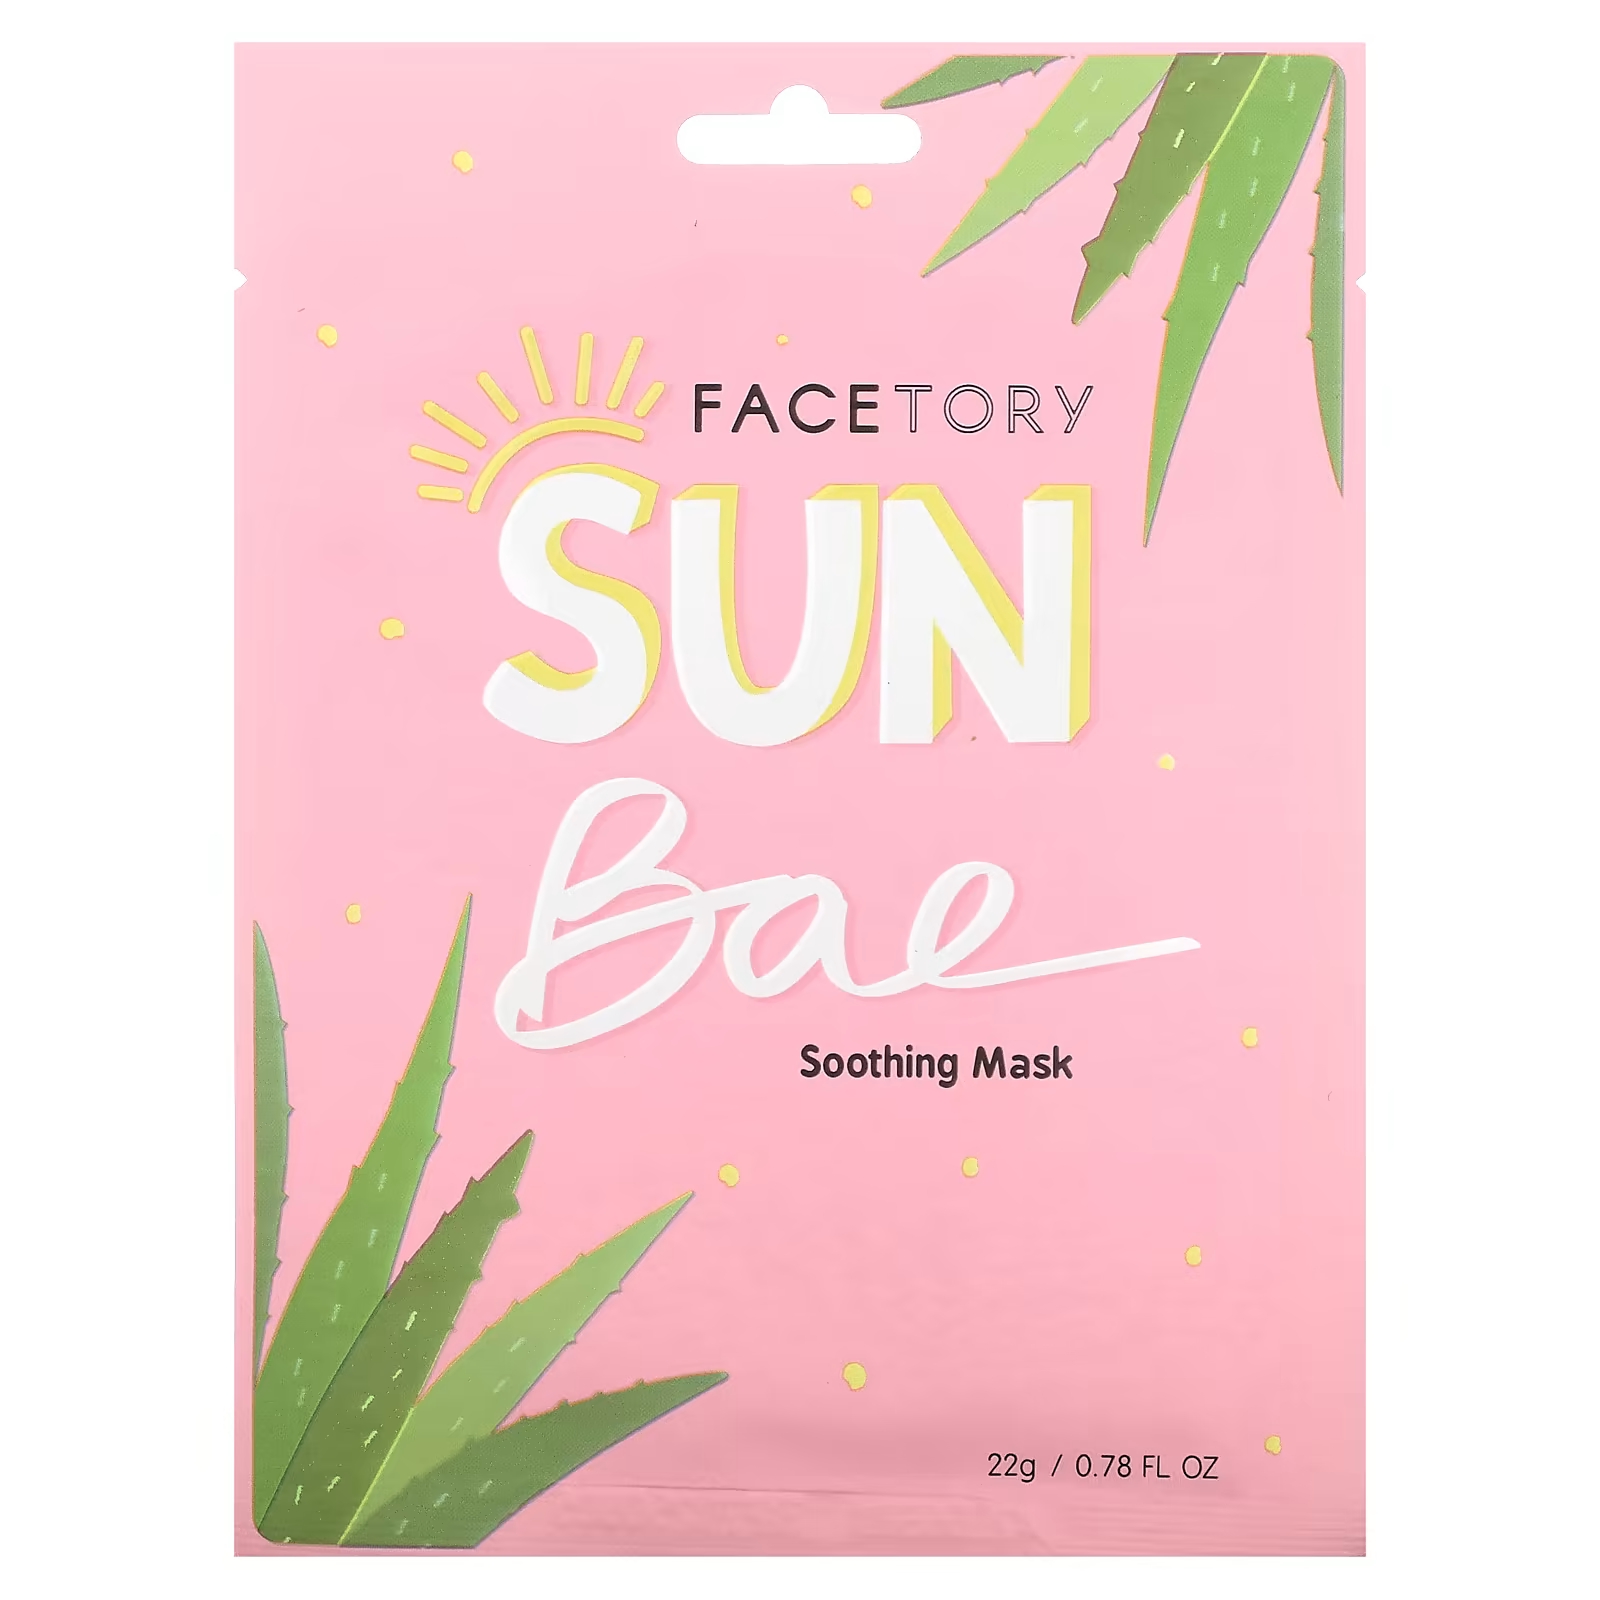 Успокаивающая косметическая маска FaceTory Sun Bae, 22 гр. facetory sun bae успокаивающая косметическая маска 1 шт 22 г 0 78 жидк унции